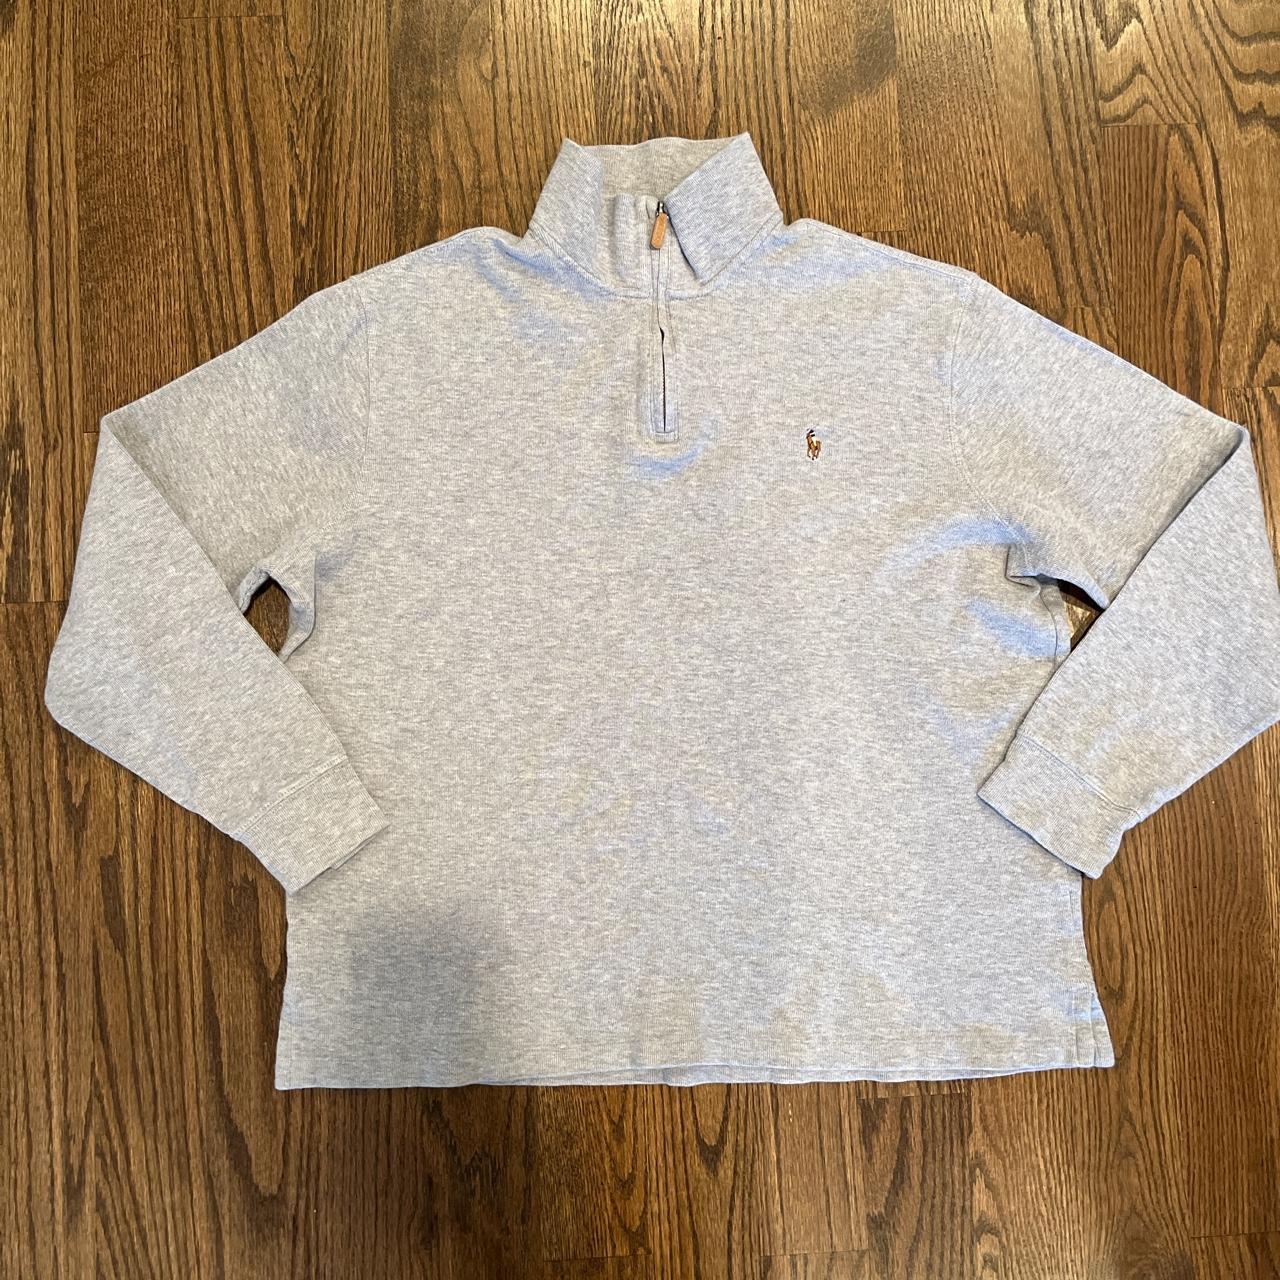 Polo Ralph Lauren Grey Quarter Zip Sweater Men’s... - Depop